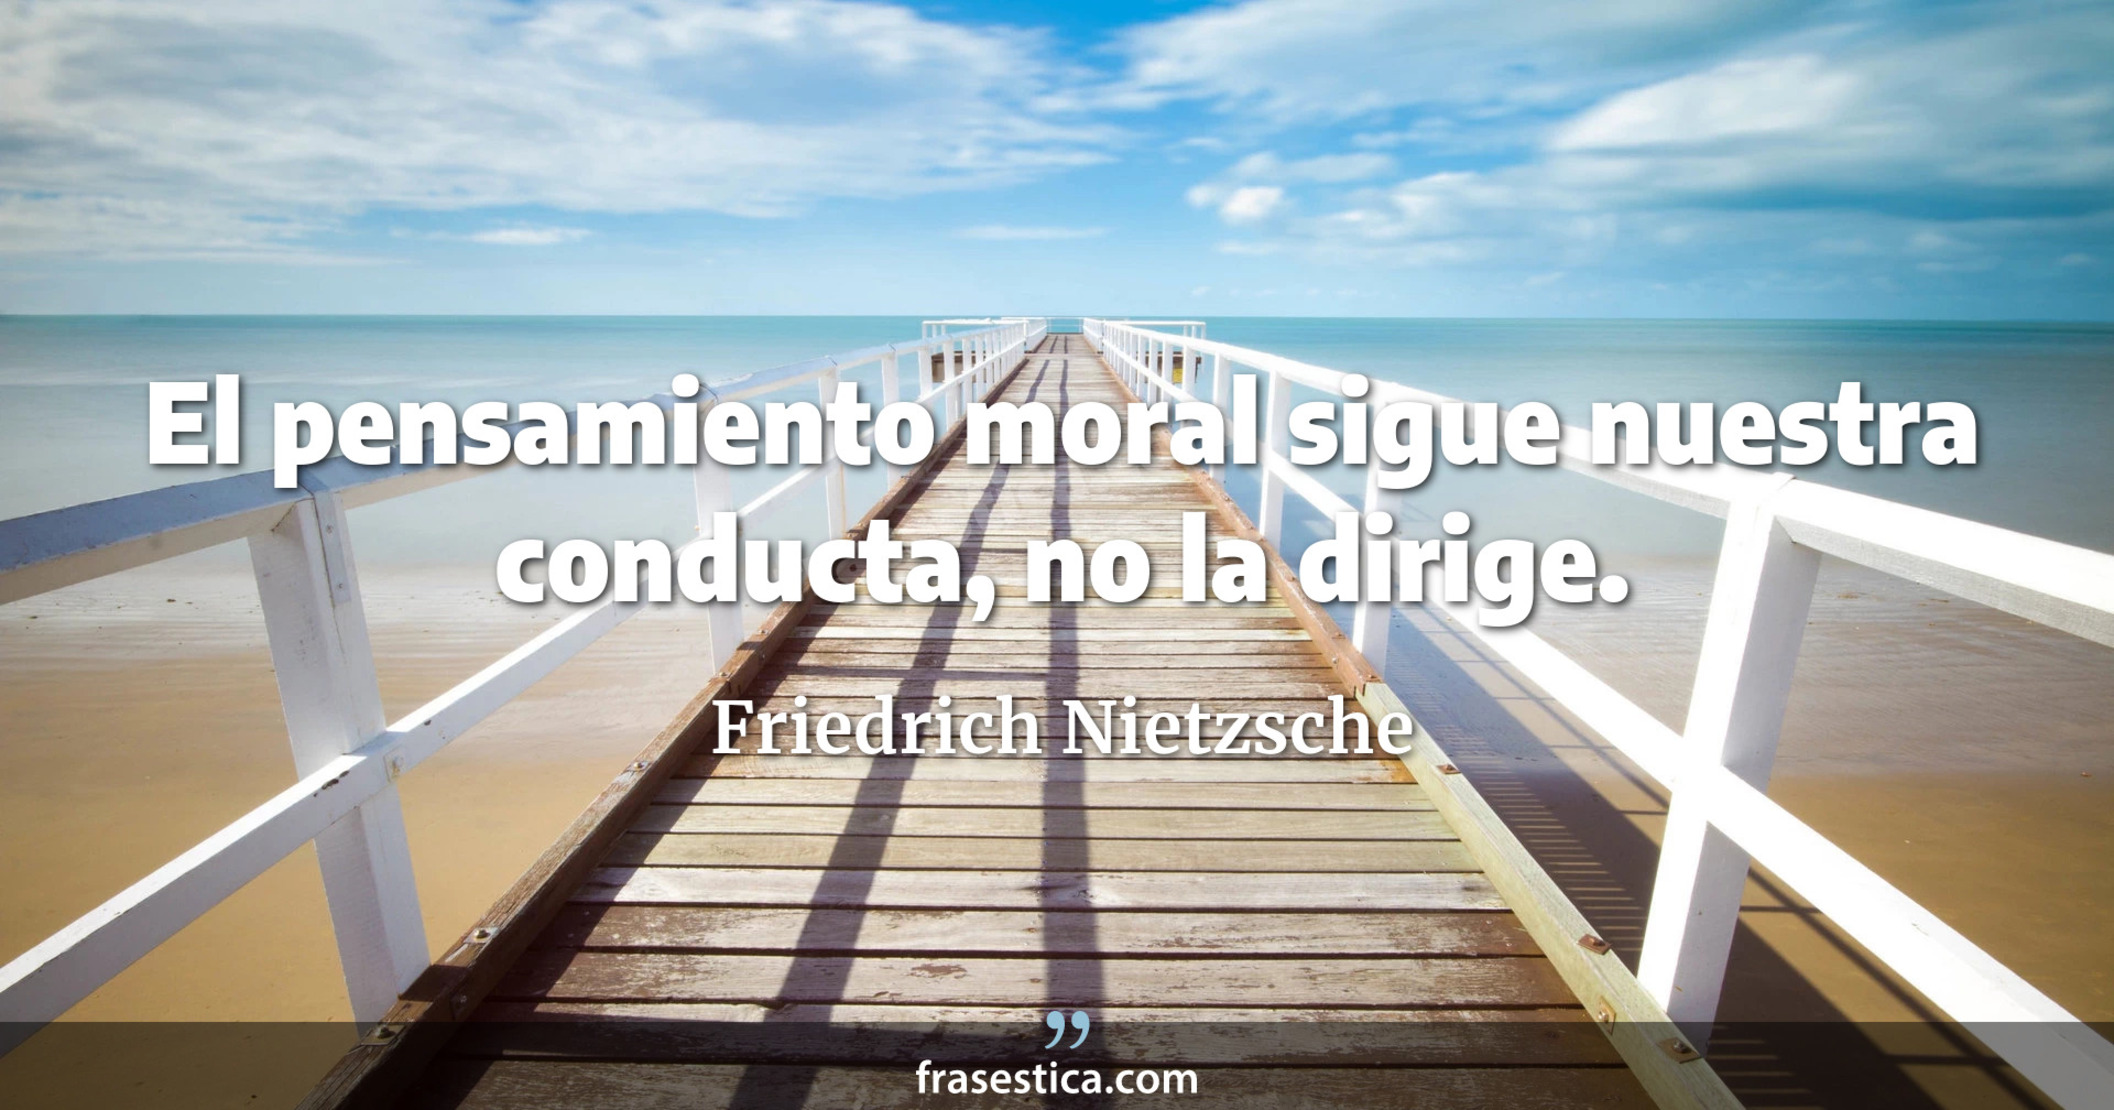 El pensamiento moral sigue nuestra conducta, no la dirige. - Friedrich Nietzsche